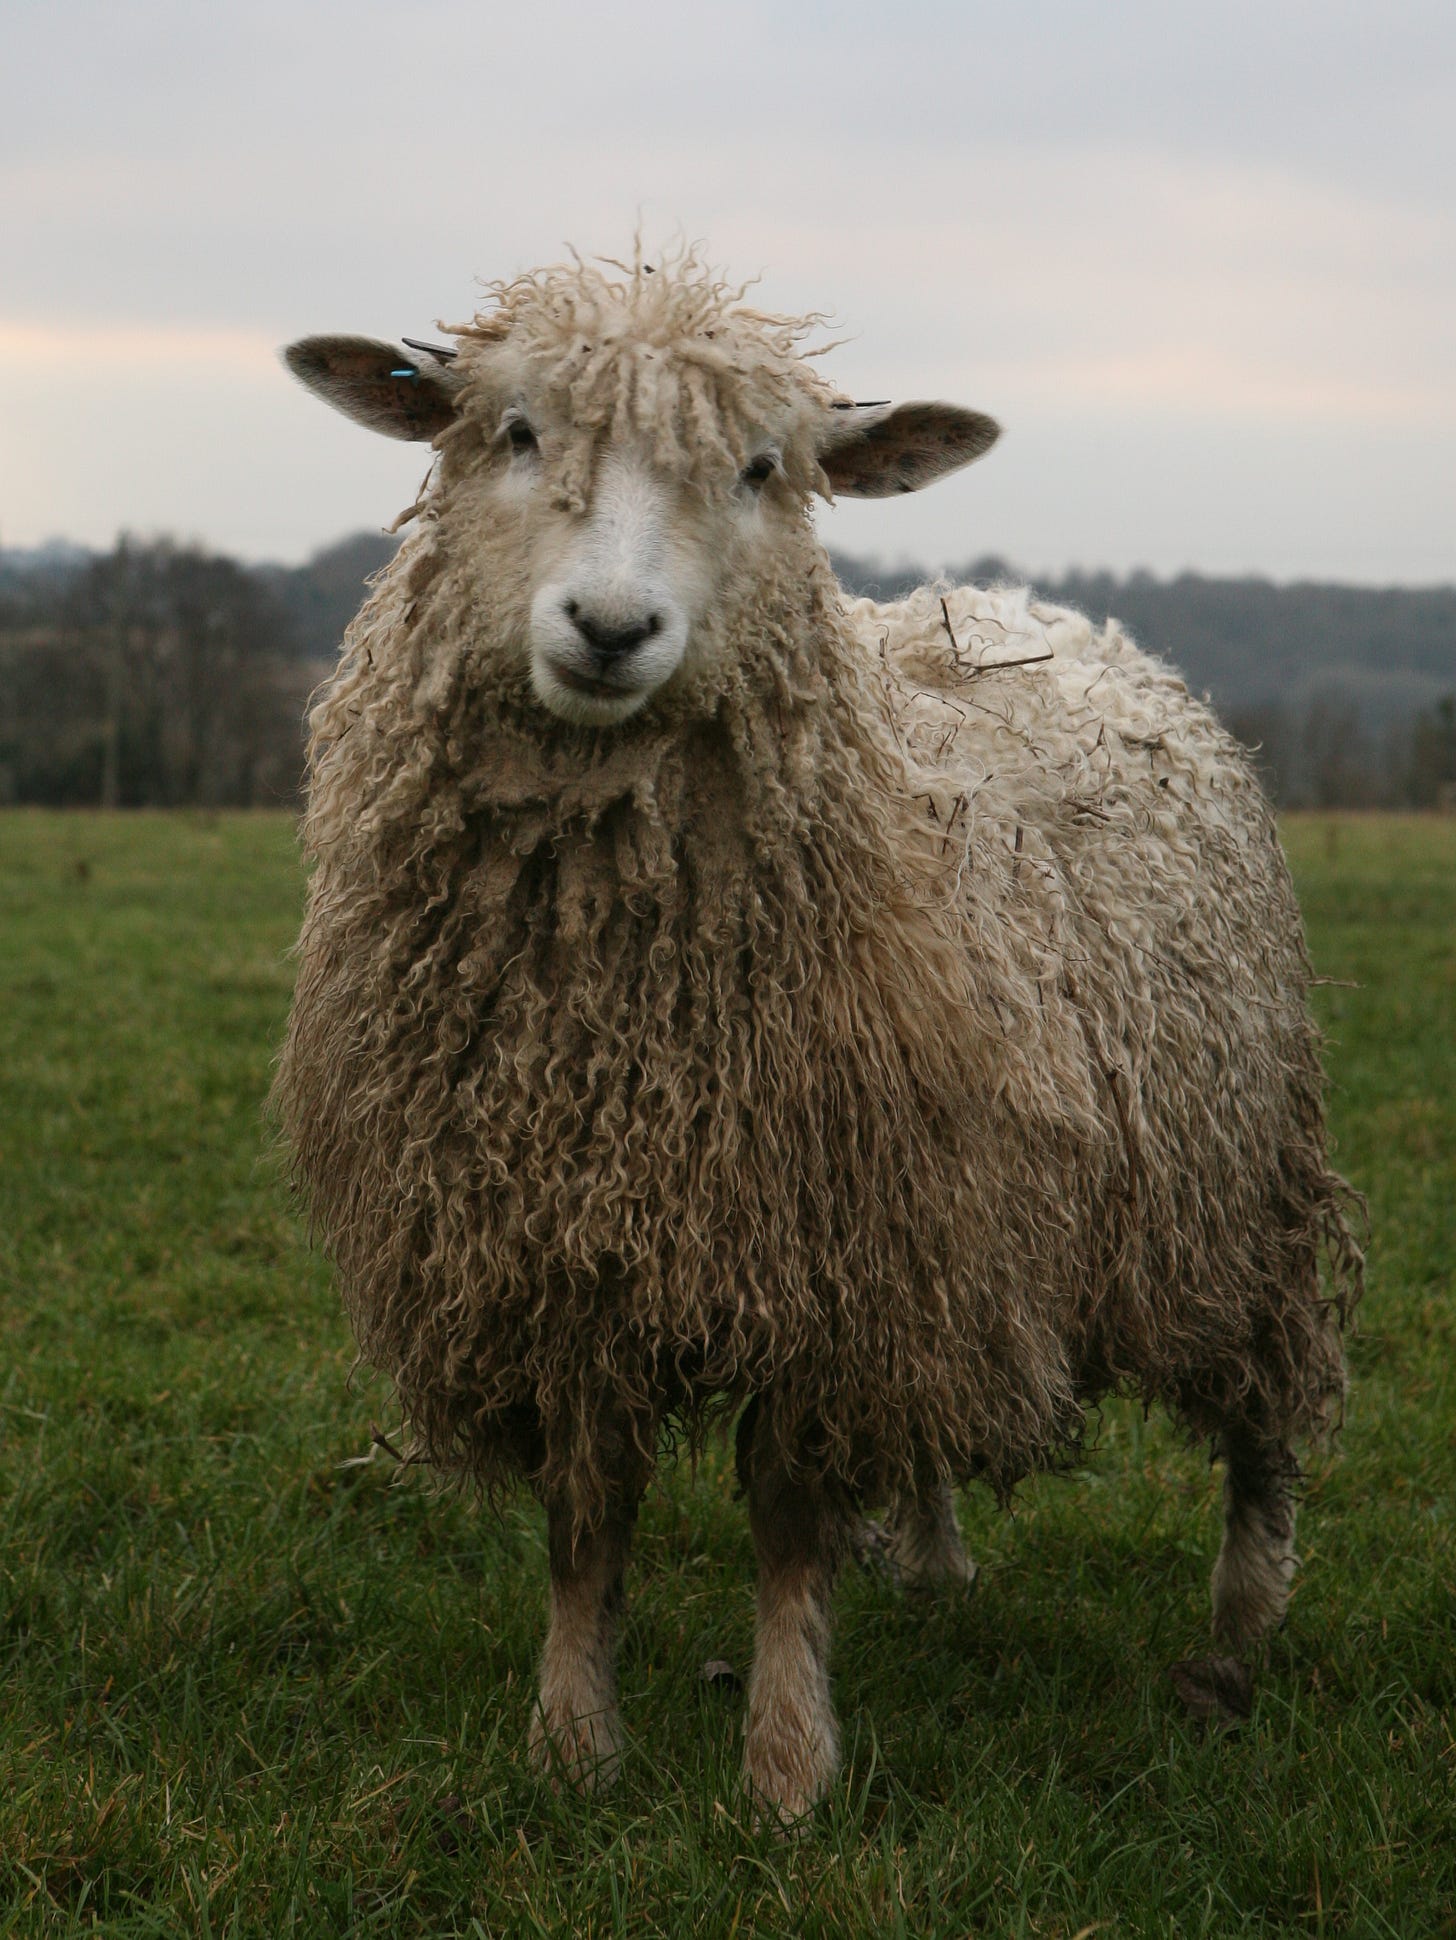 Cotswold sheep - Wikipedia